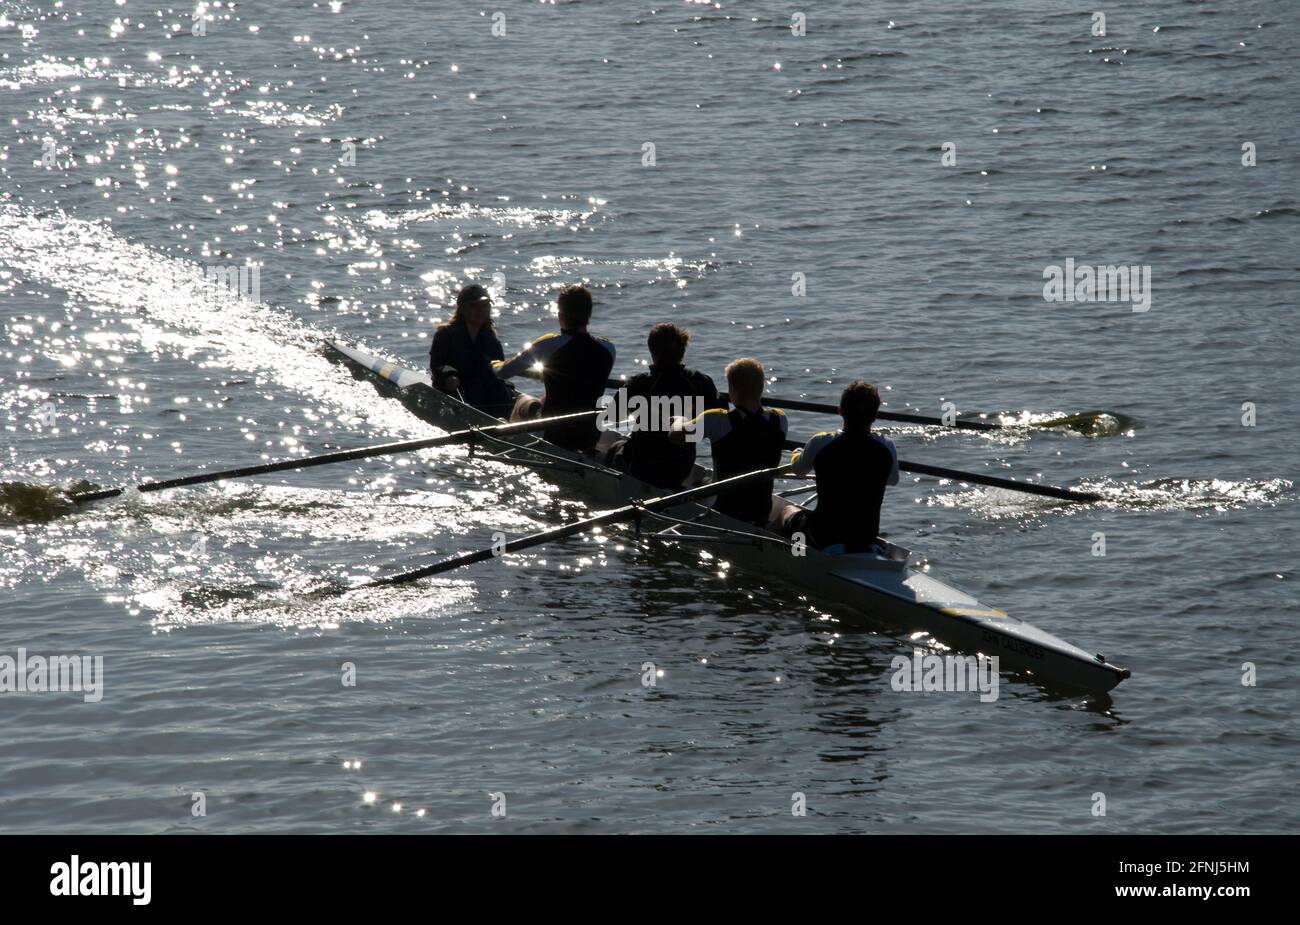 Equipaggio di quattro persone con cox che ruggono verso l'osservatore con il sole glistening sull'acqua e facendo sia la barca che l'equipaggio distinguiti come silhouette Foto Stock